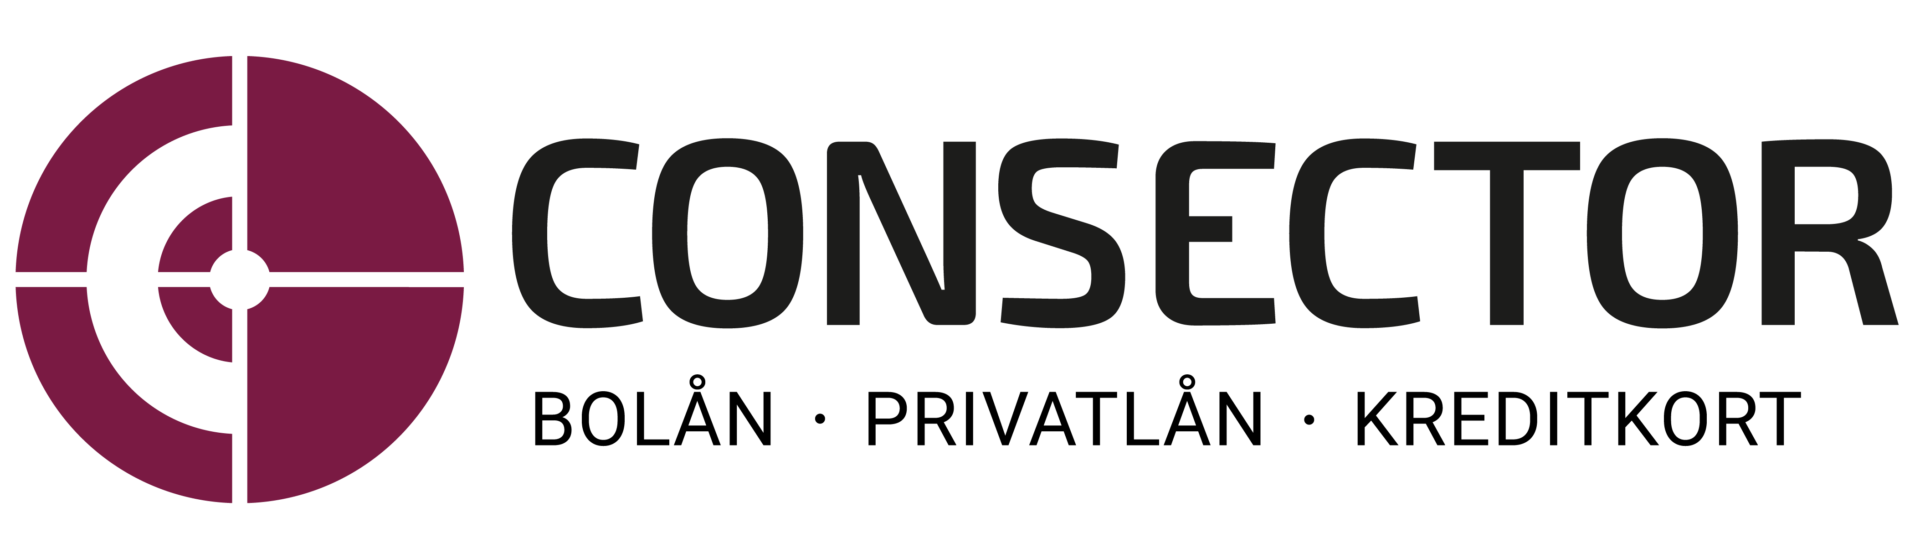 Consector logo